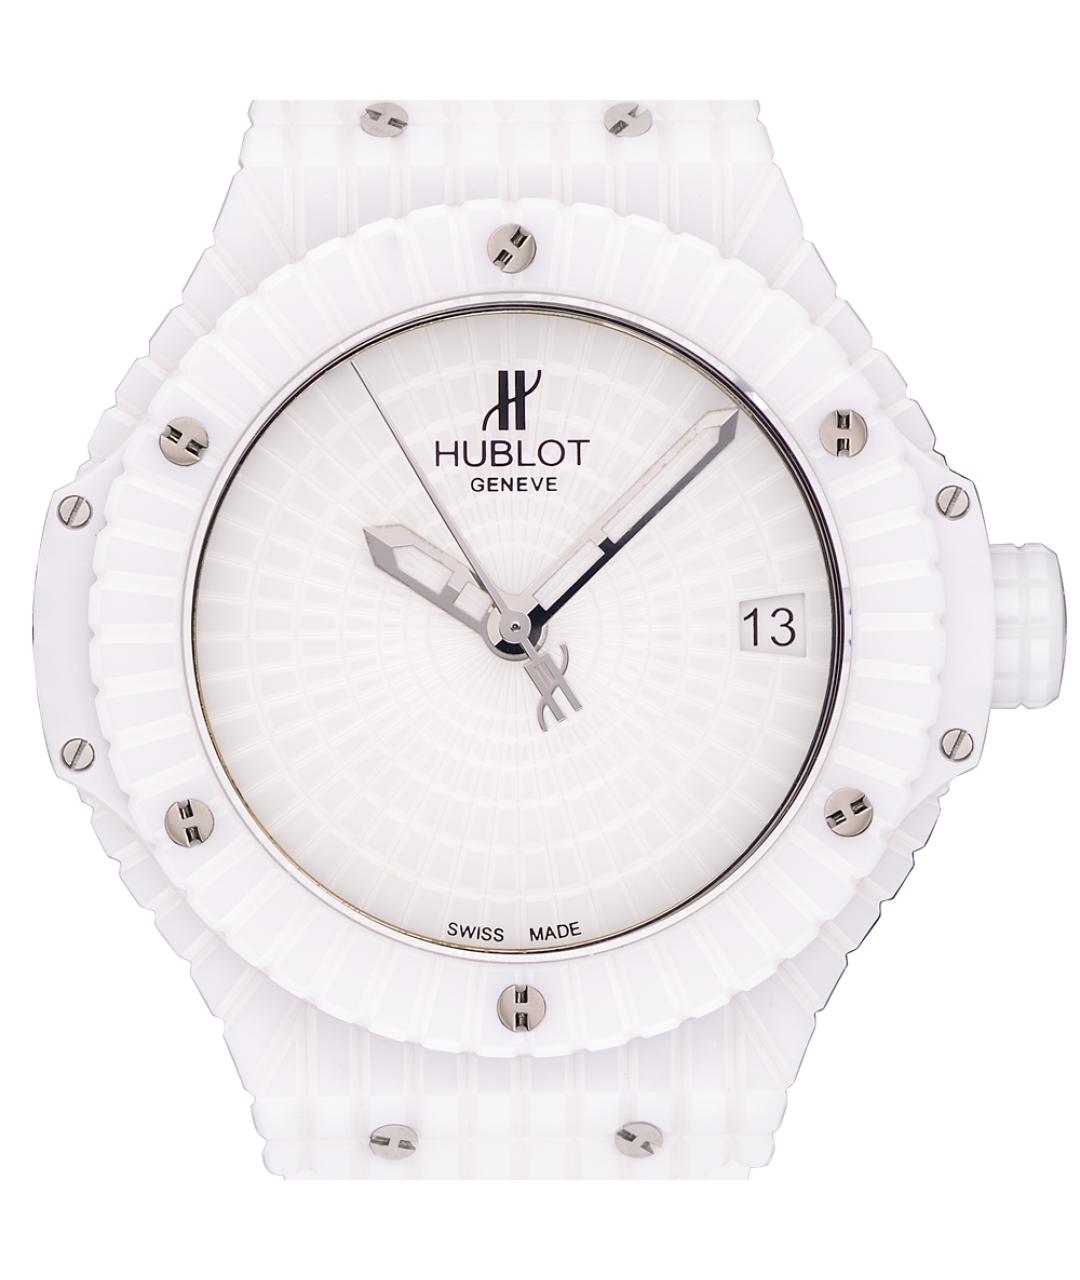 HUBLOT Белые керамические часы, фото 2